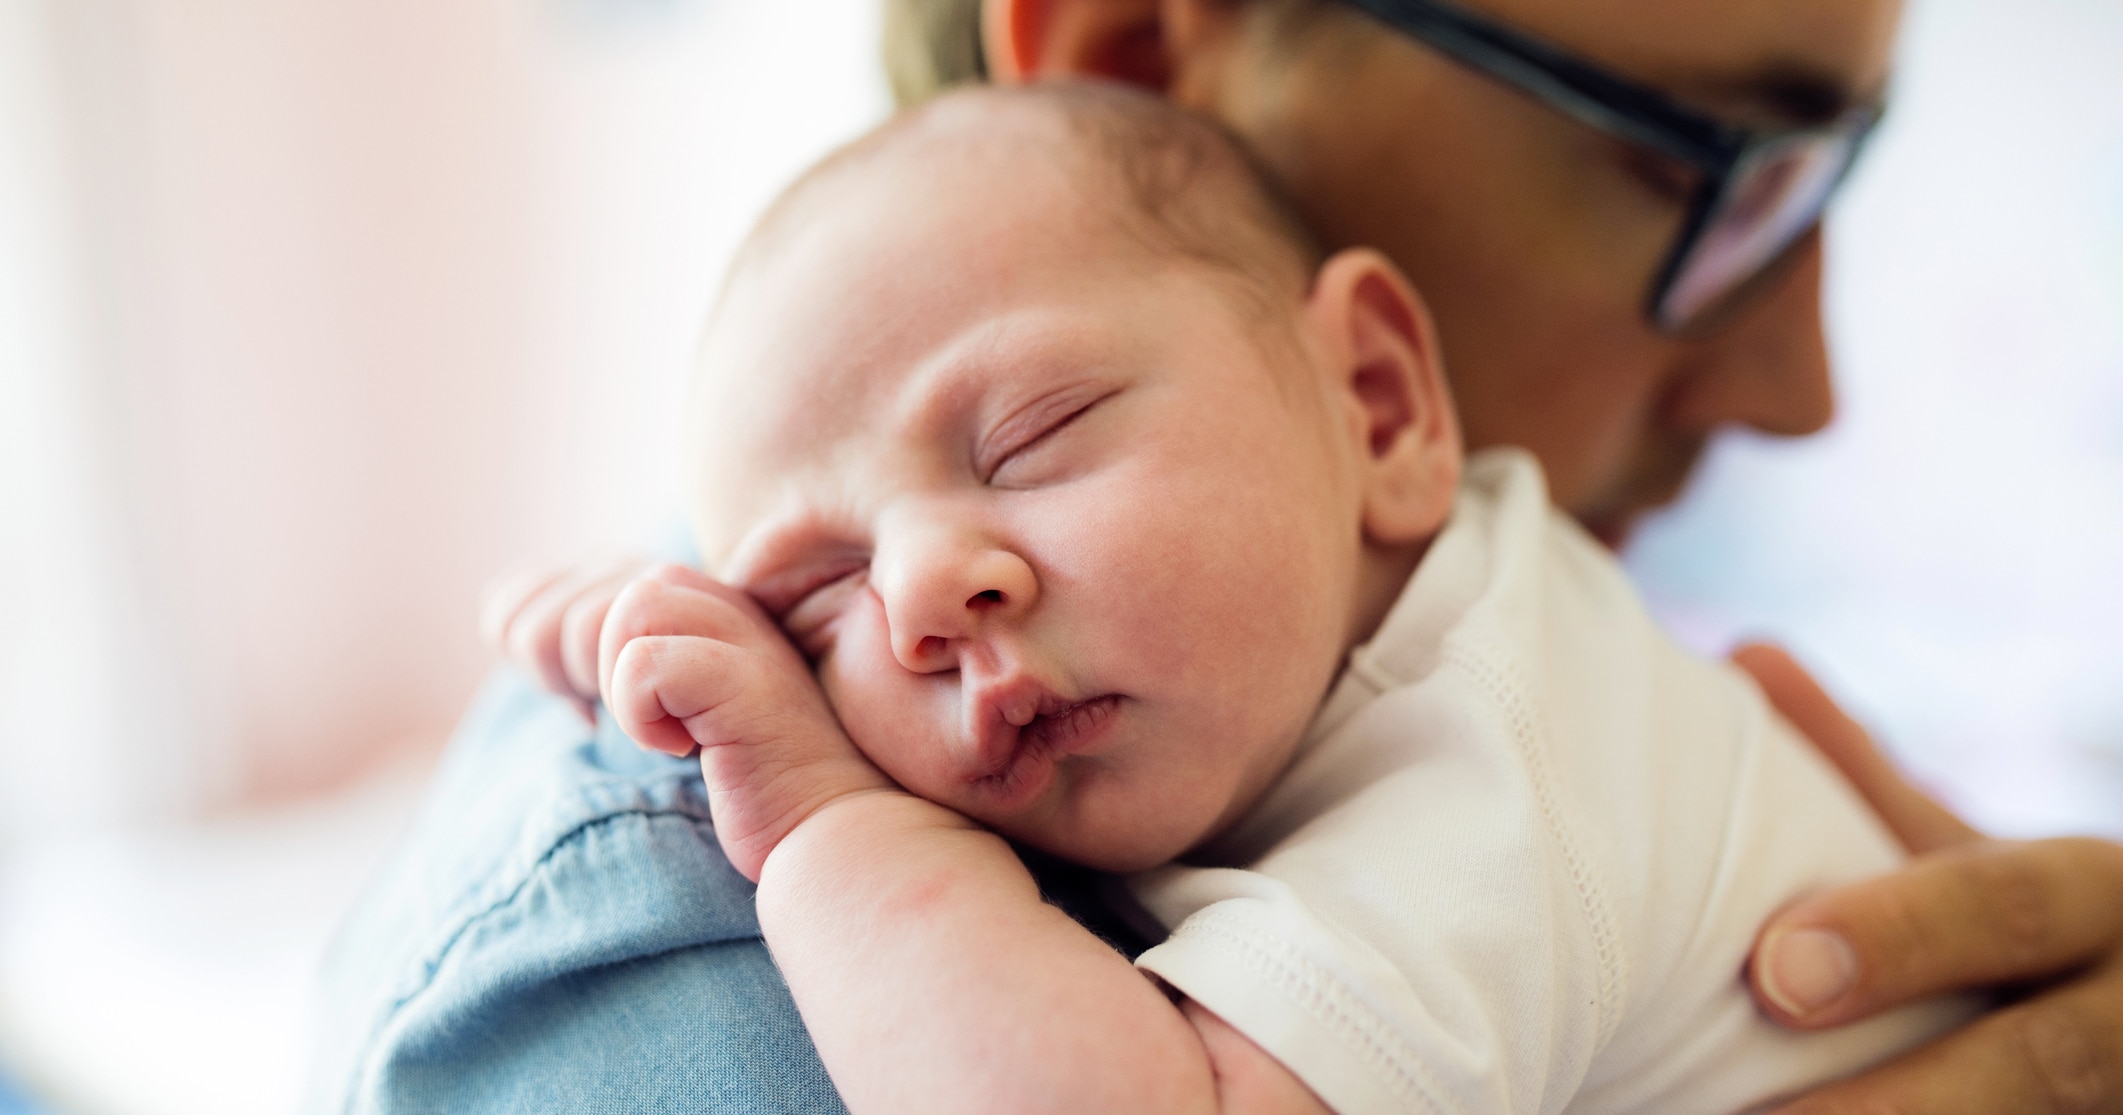 Coliche neonato: cause, rimedi e verità scientifiche 